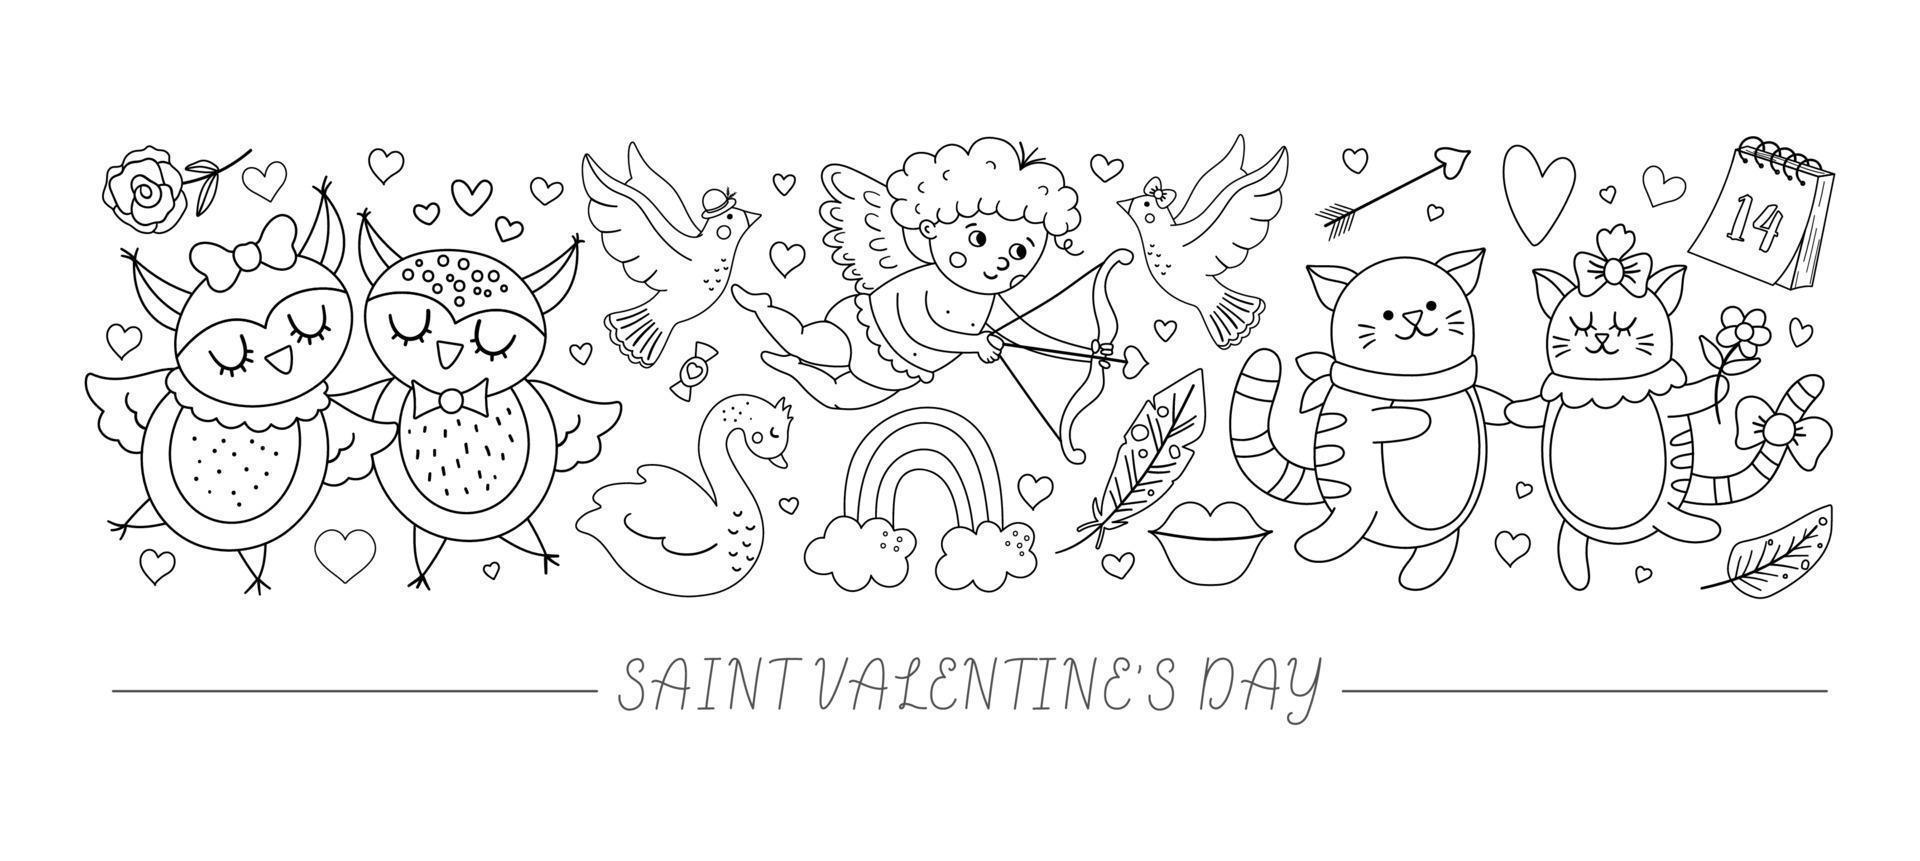 vettore orizzontale in bianco e nero con personaggi ed elementi piatti del giorno di san valentino. disegno del modello di carta con linea cupido, animali divertenti, cuori. carino confine di vacanza d'amore di febbraio.